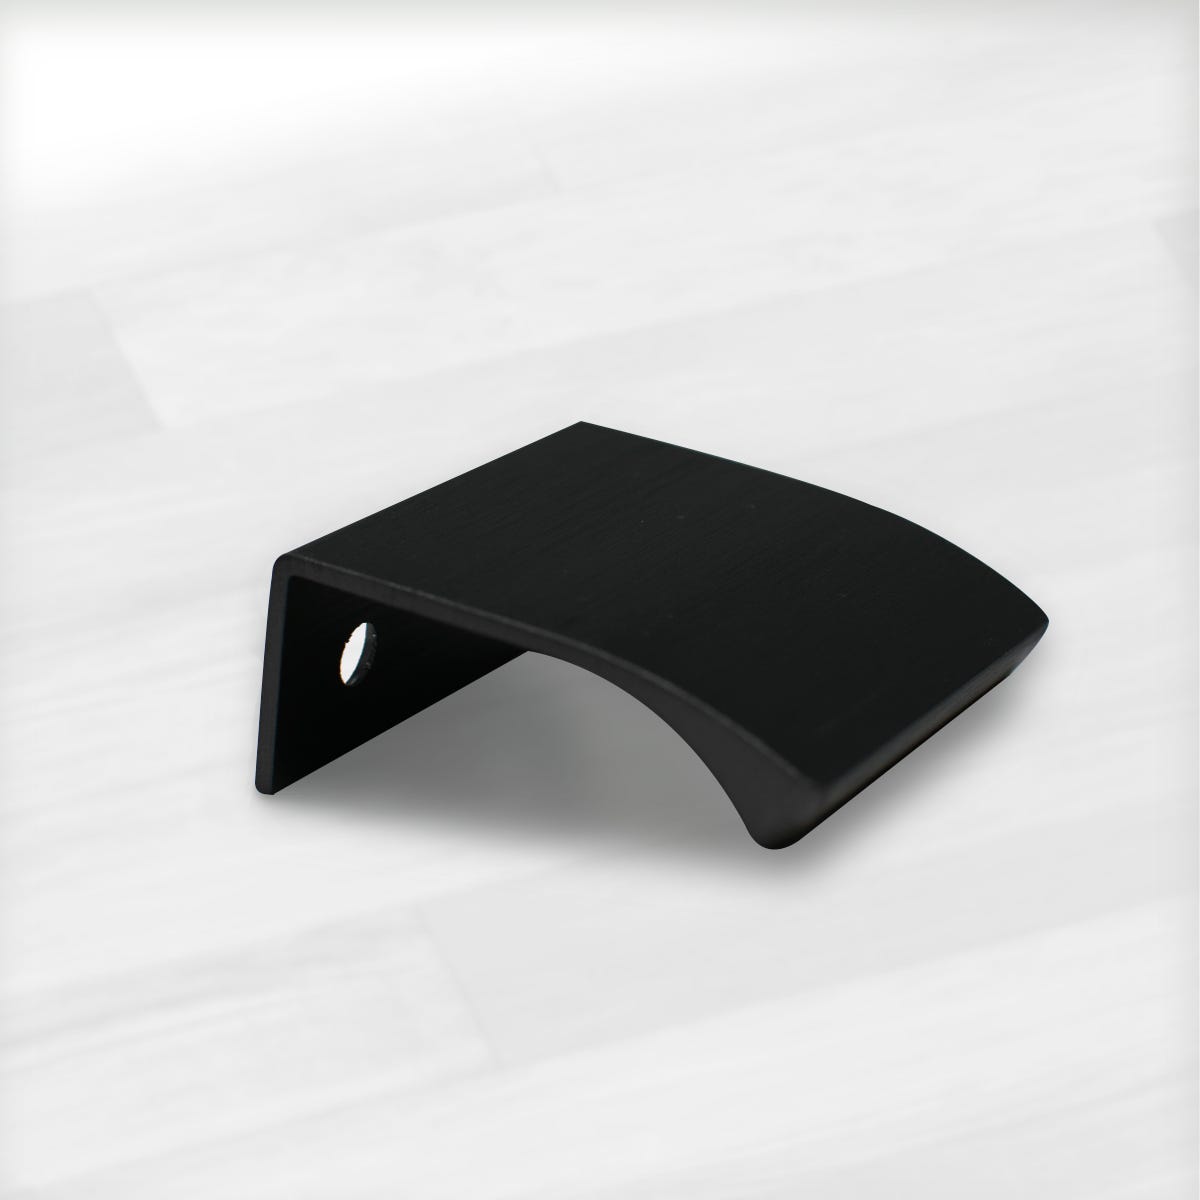 Tirador Square - Inox Look - para Muebles de Baño y Cocina - 128 mm -  Furnipart